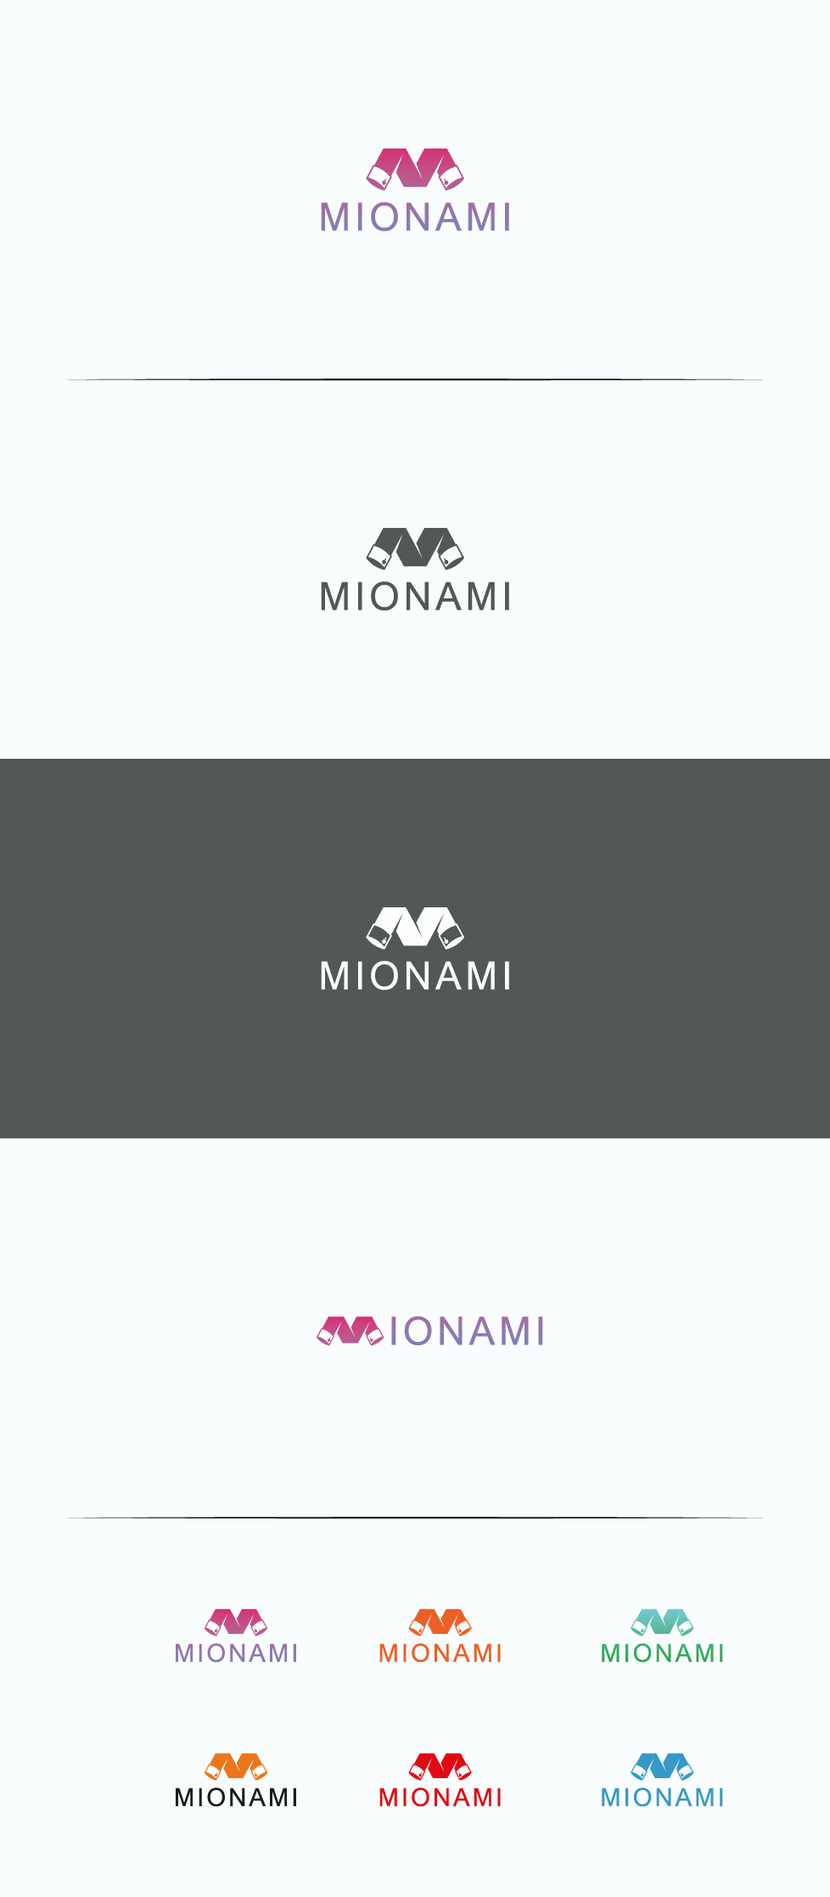 Здравствуйте, вариант стильного лого с обыгрыванием рукавов рубашки и буквы "М" - Необходимо разработать логотип для молодого бренда одежды MIONAMI